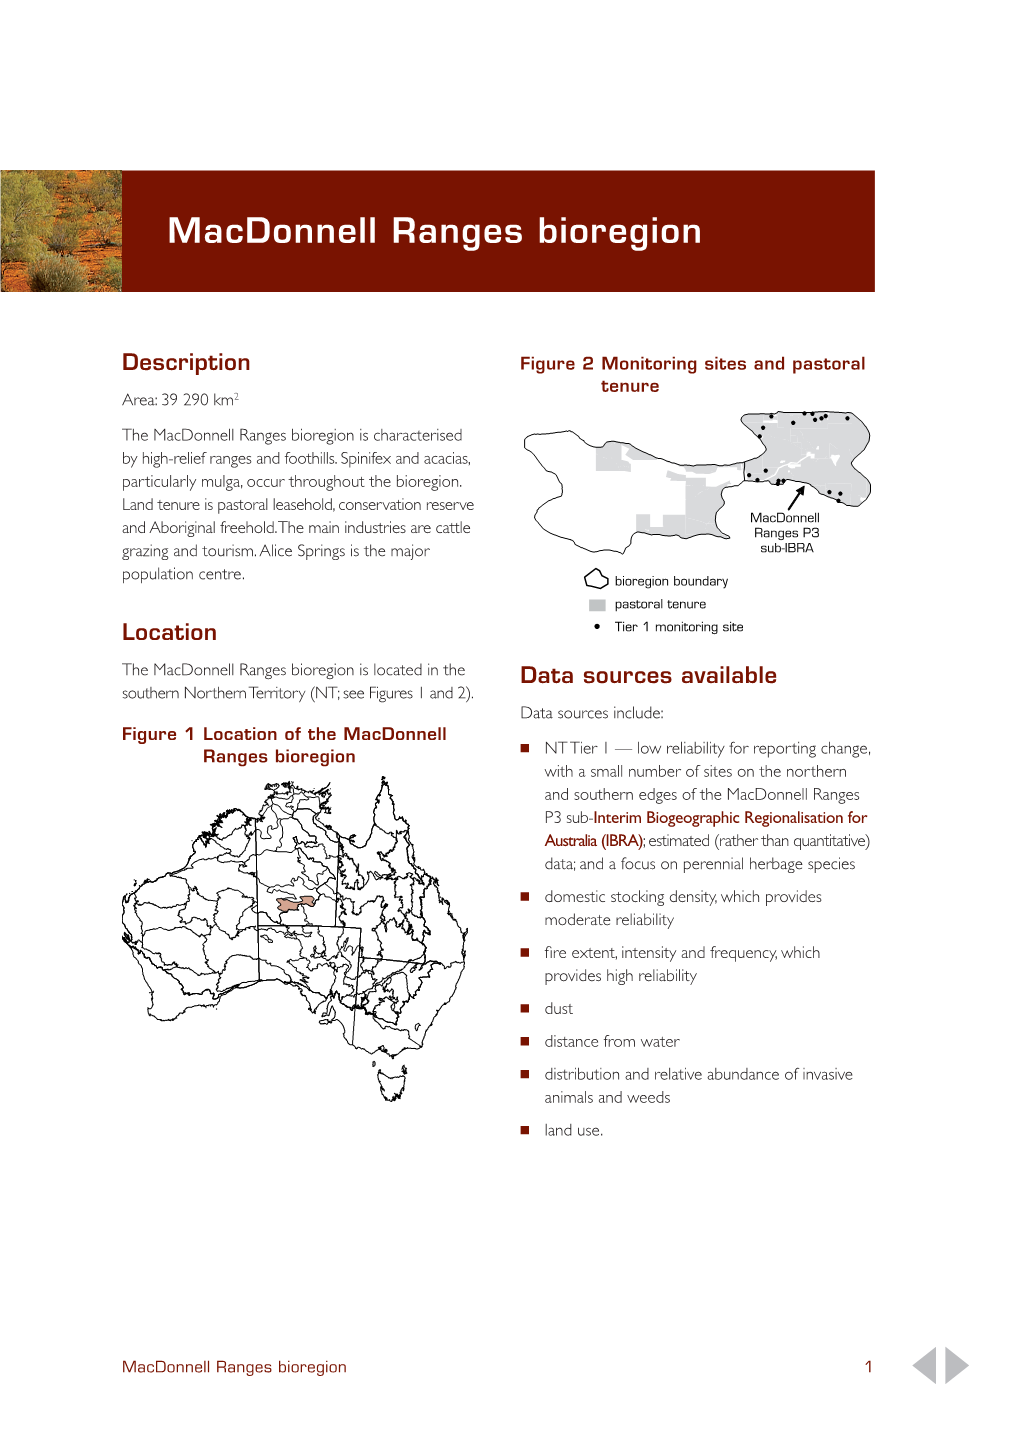 Macdonnell Ranges Bioregion